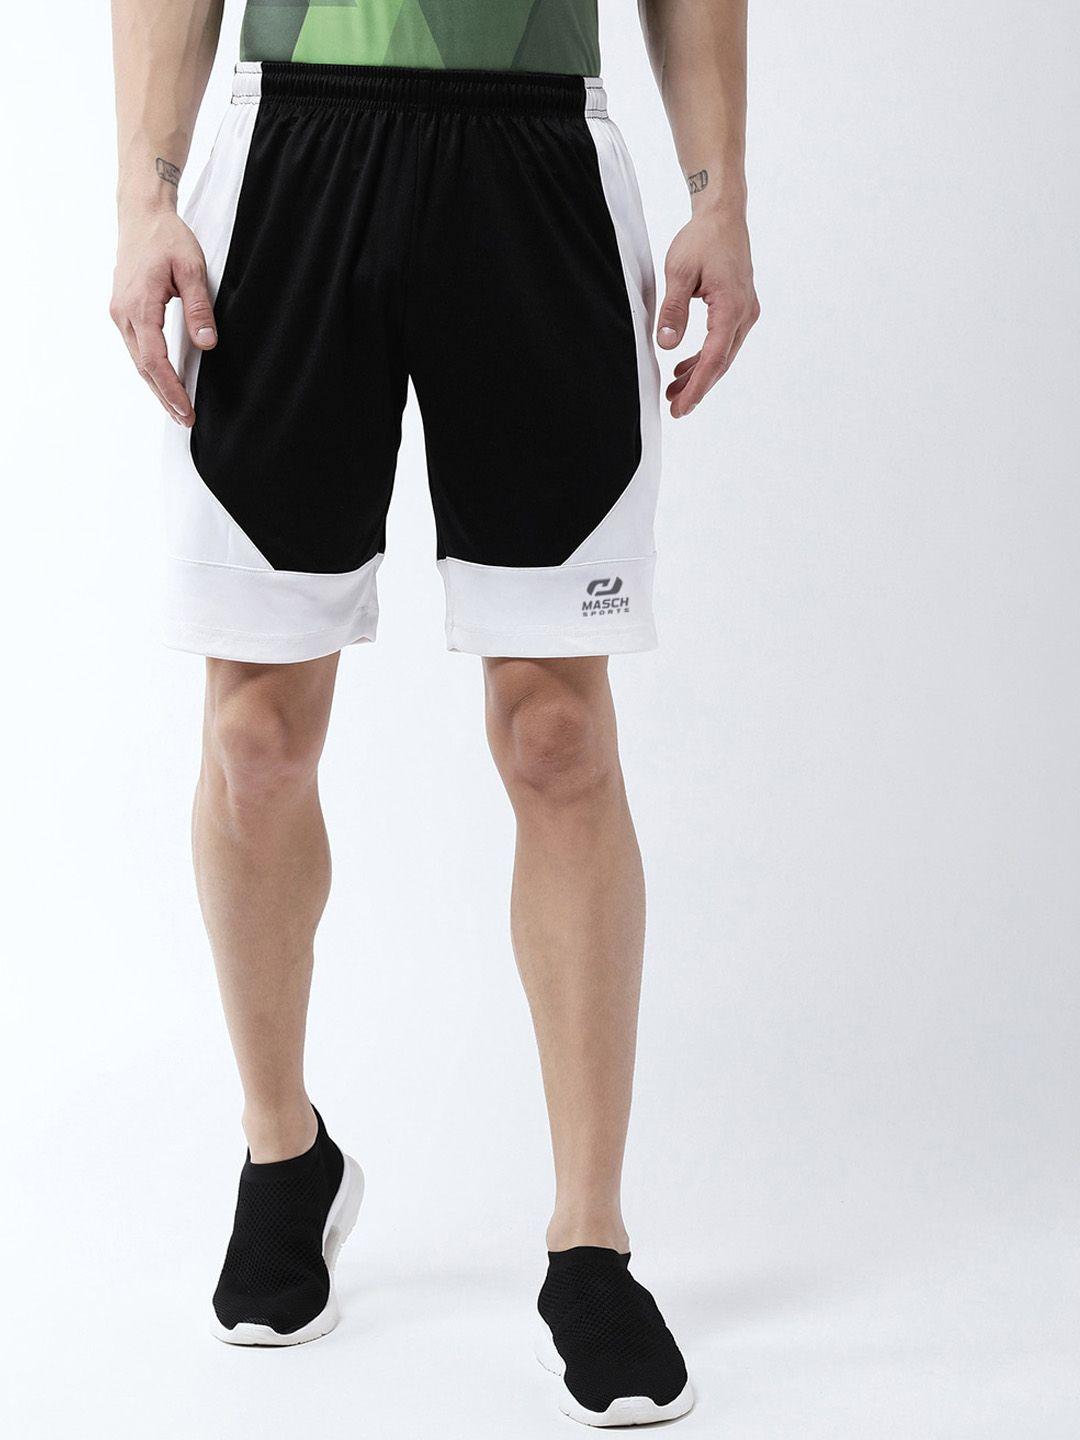 masch-sports-men-black-&-white-colourblocked-sports-shorts